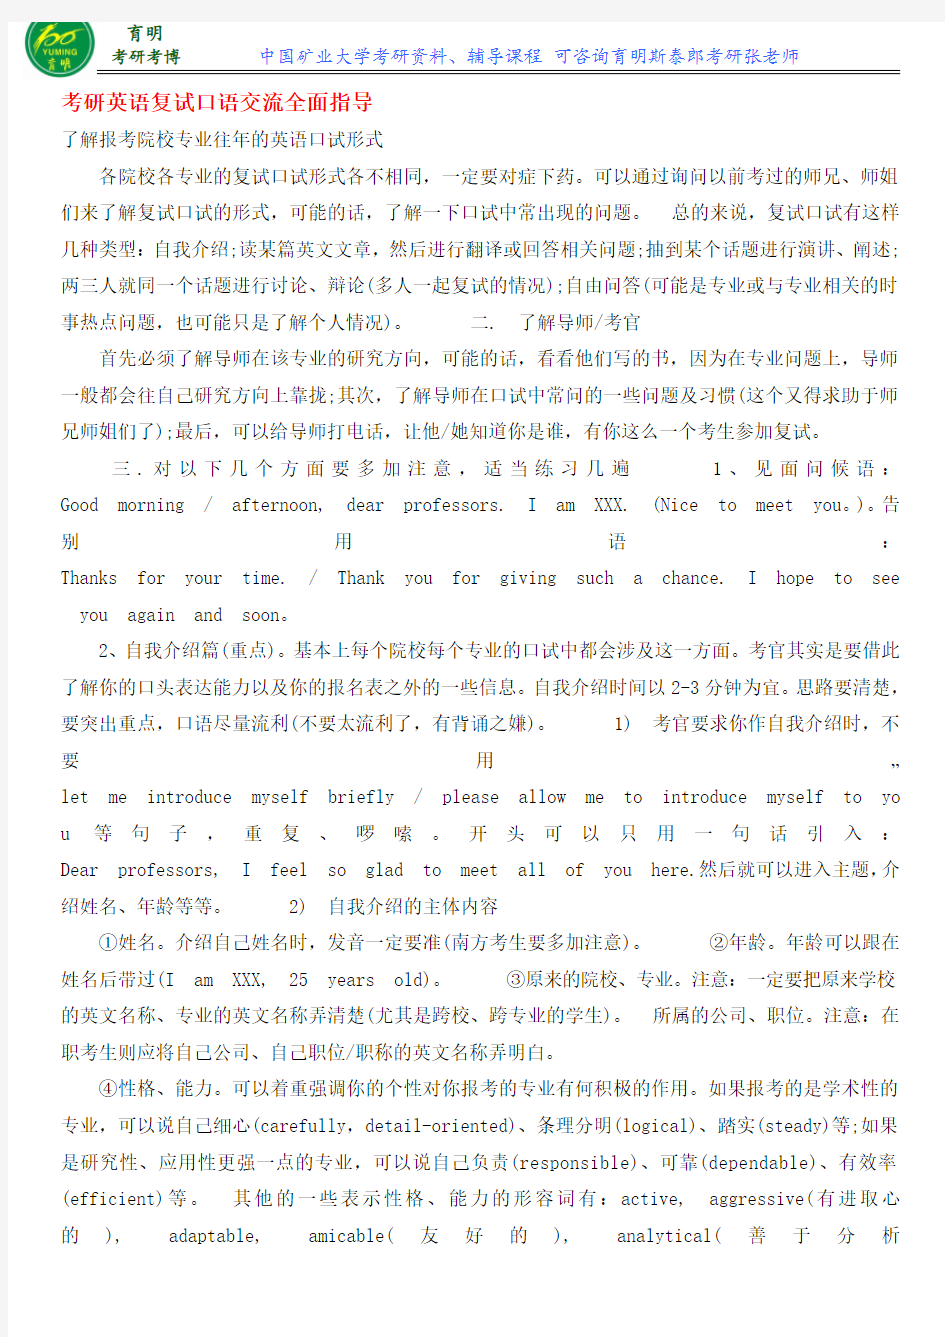 2016中国矿业大学(北京)行政管理专业考研复试的常见问题及应对策略复试辅导课程保过班